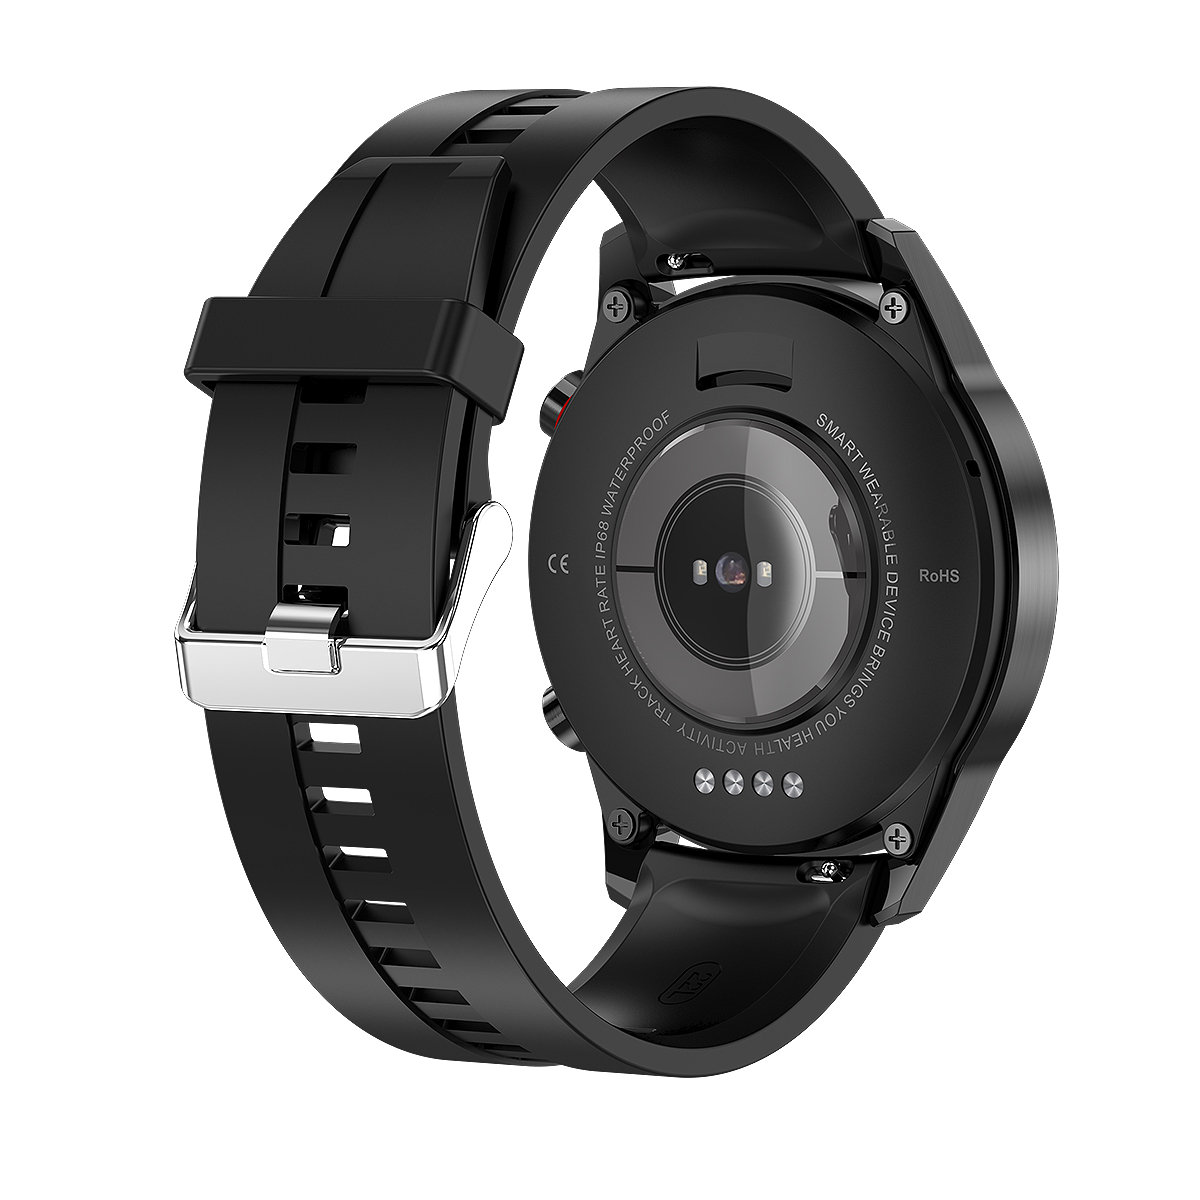 Zdjęcia - Pasek do smartwatcha / smartbanda Promis SM40 PSC , Pasek silikonowy czarny  (metalowa sprzączka, szeroki)